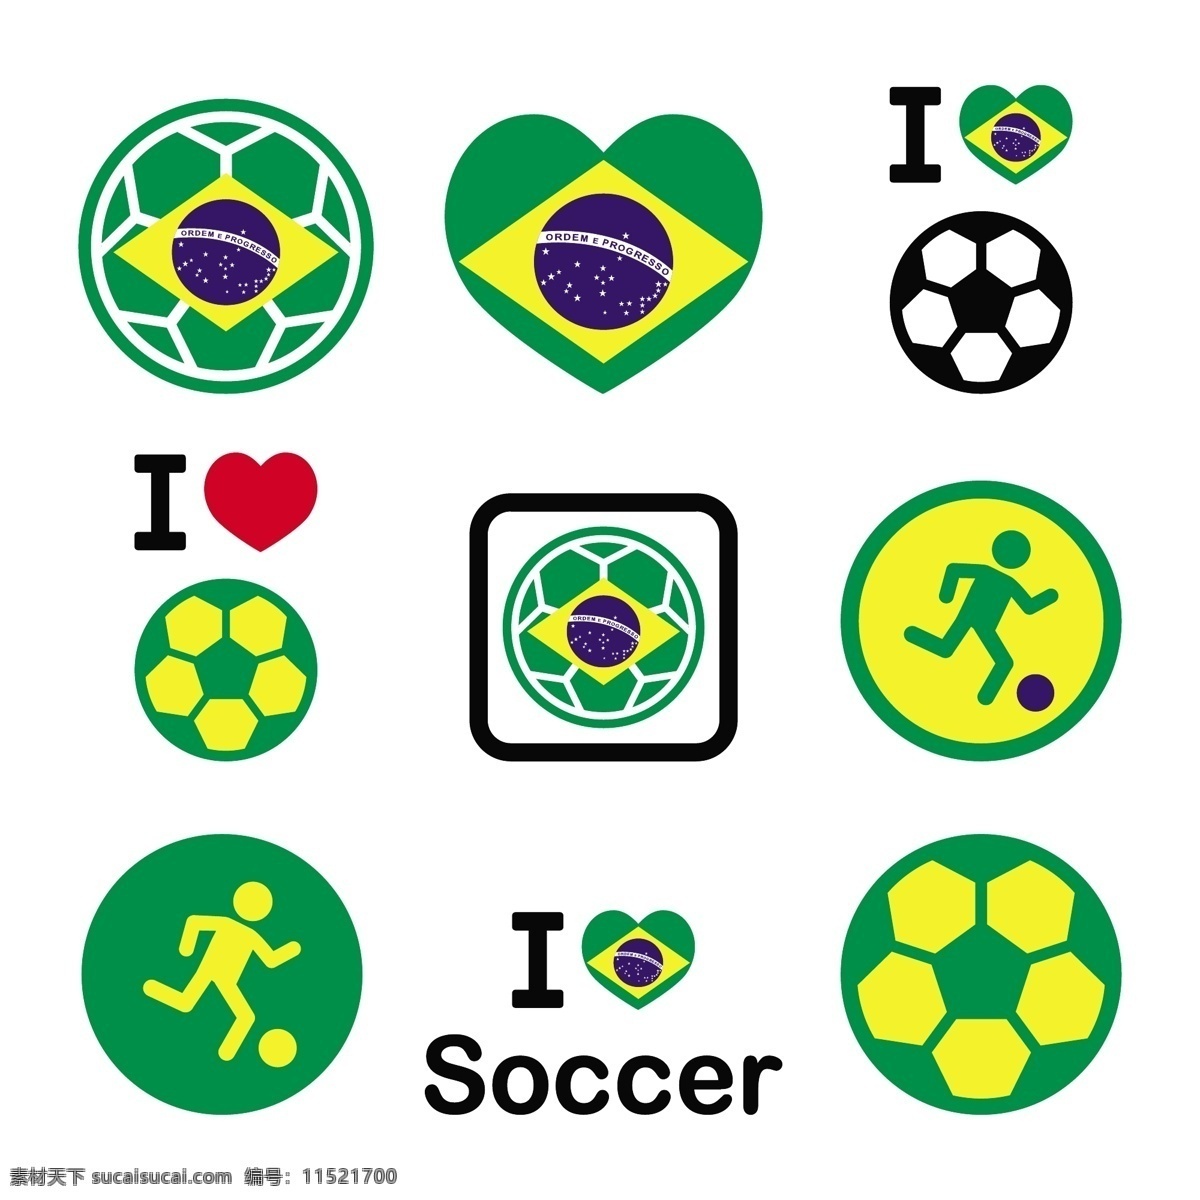 巴西 世界杯 图标 模板下载 足球 世界杯图标 足球赛事 足球比 体育运动 生活百科 矢量素材 白色